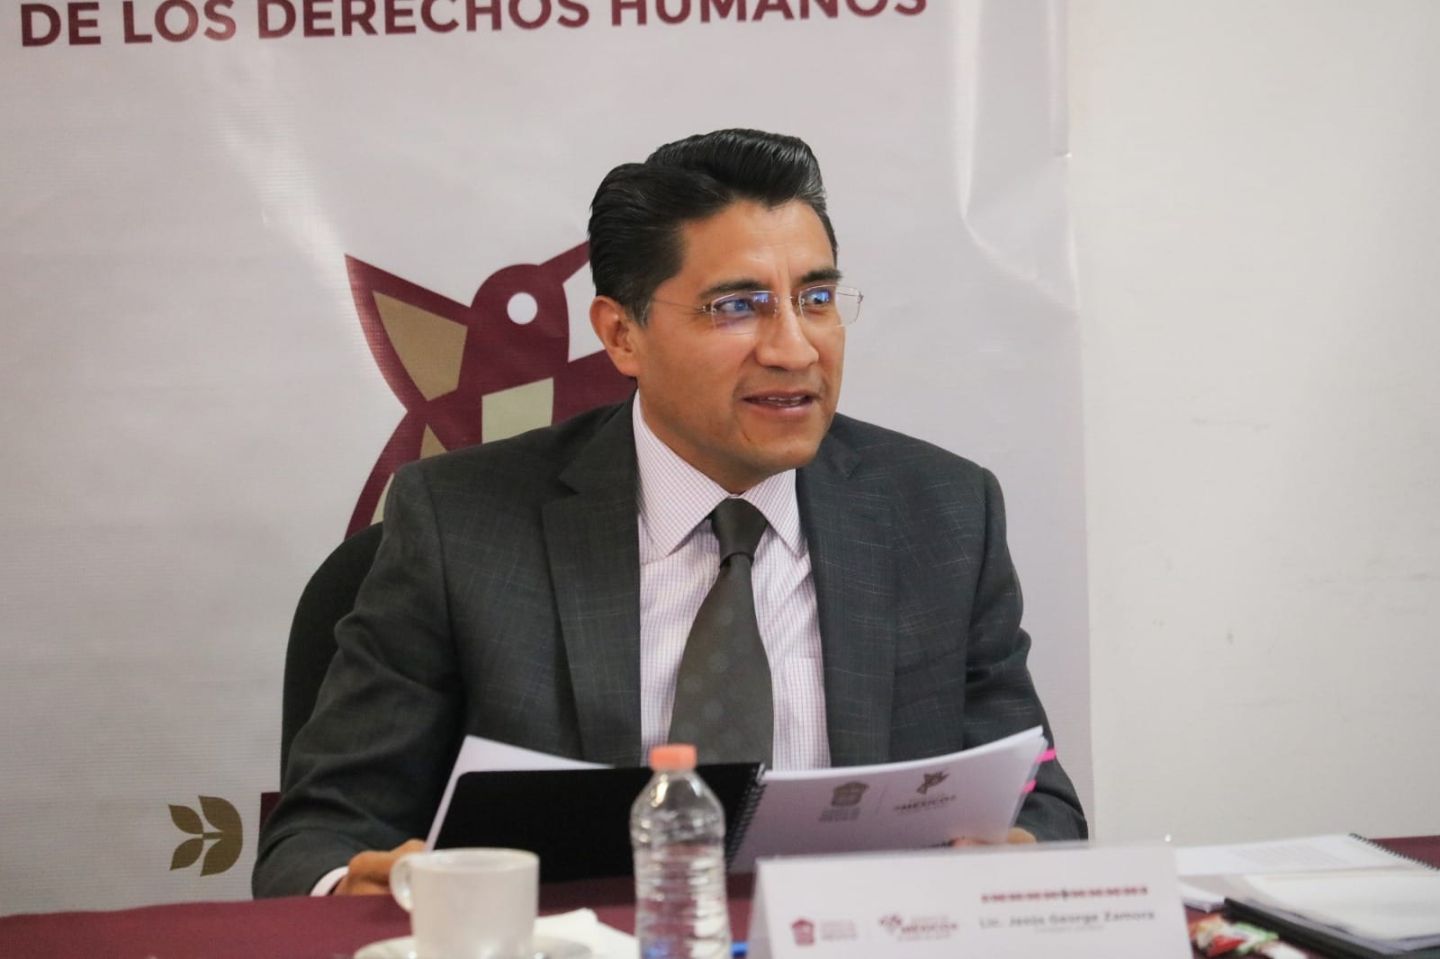 Garantiza Gobierno del Estado de México el Libre
Ejercicio Periodístico y la Defensa de los DDHH.
